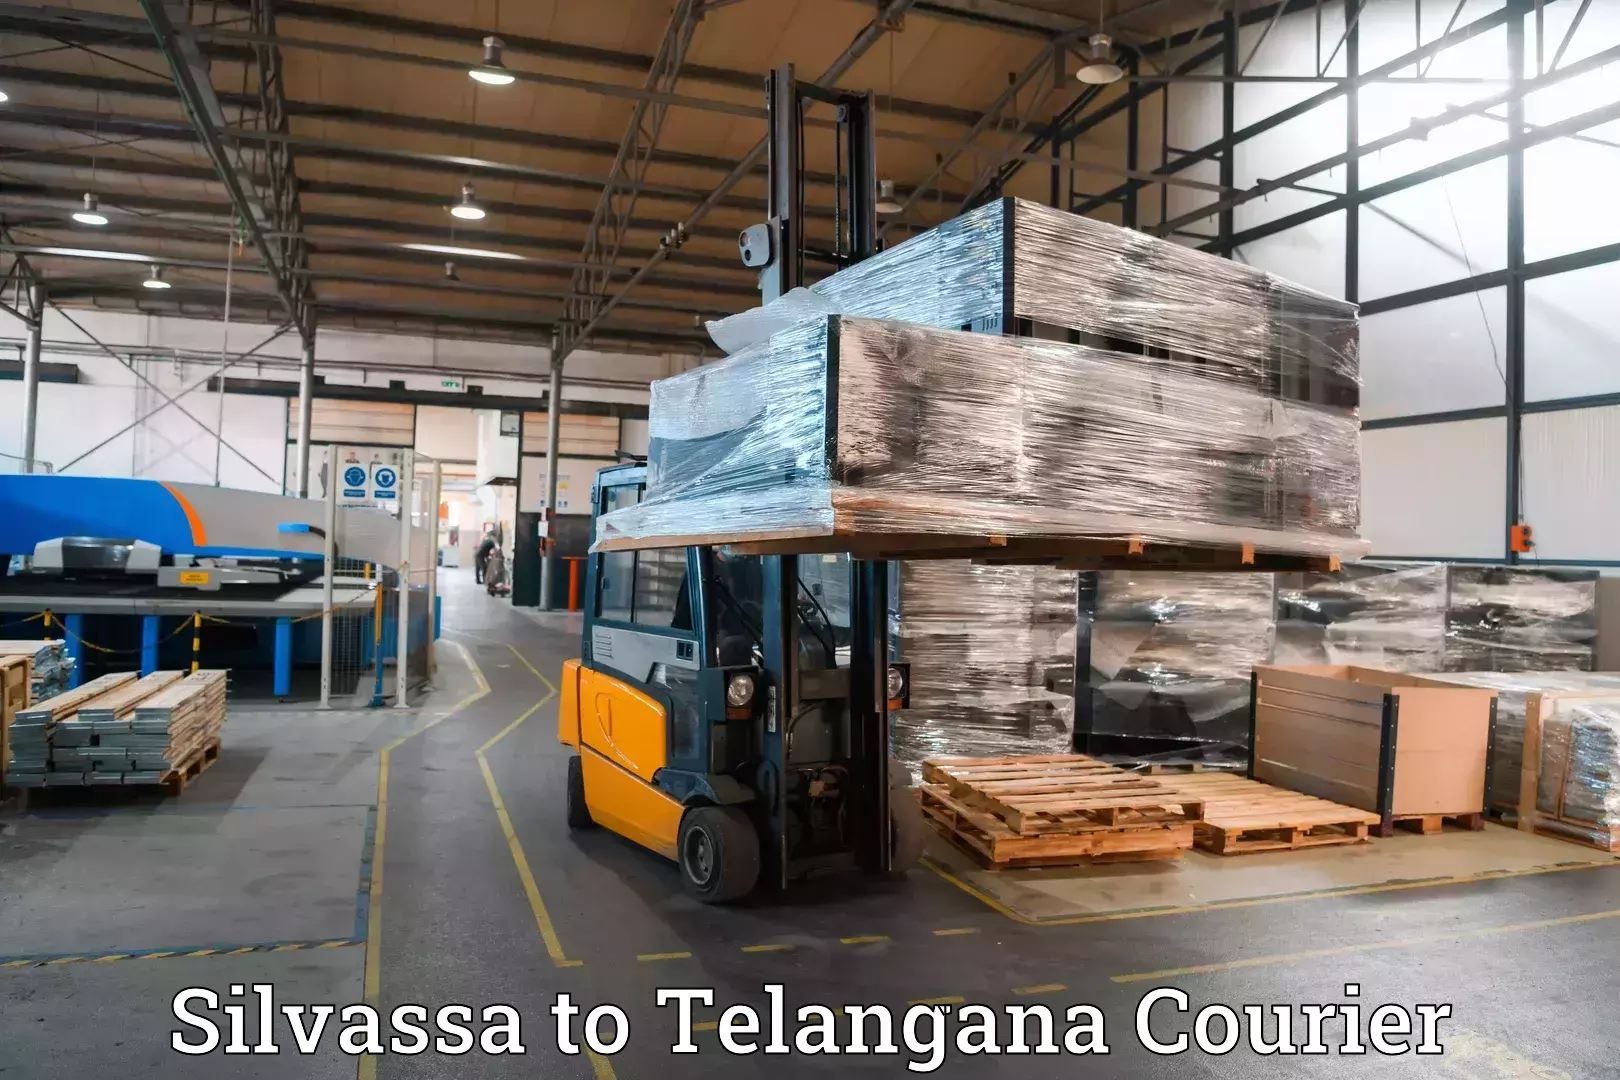 Luggage shipment specialists Silvassa to Nizamabad